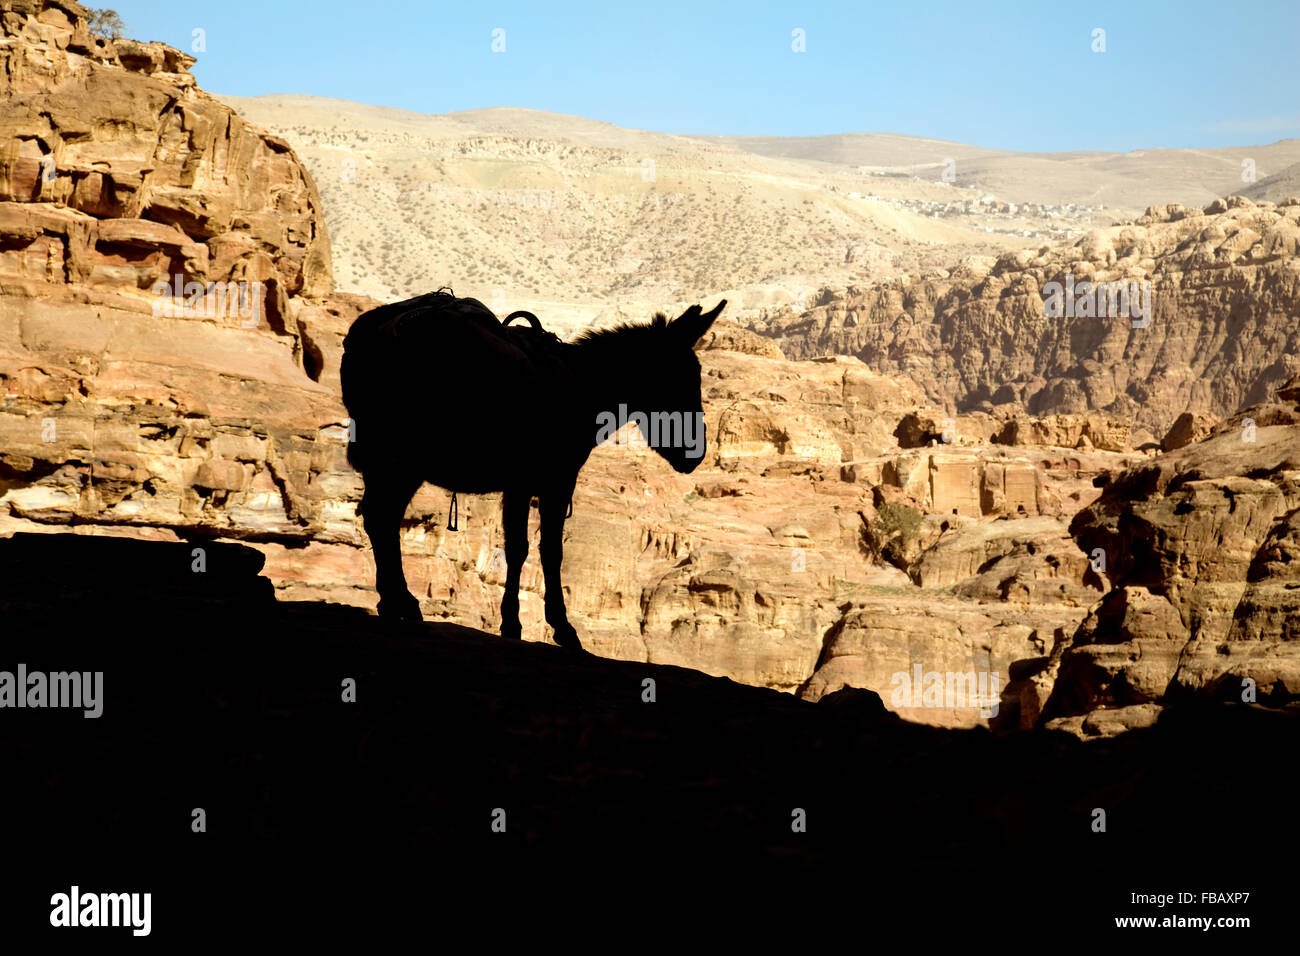 La silhouette di un asino contro il soleggiato montagne della Giordania, Medio Oriente e Asia Foto Stock